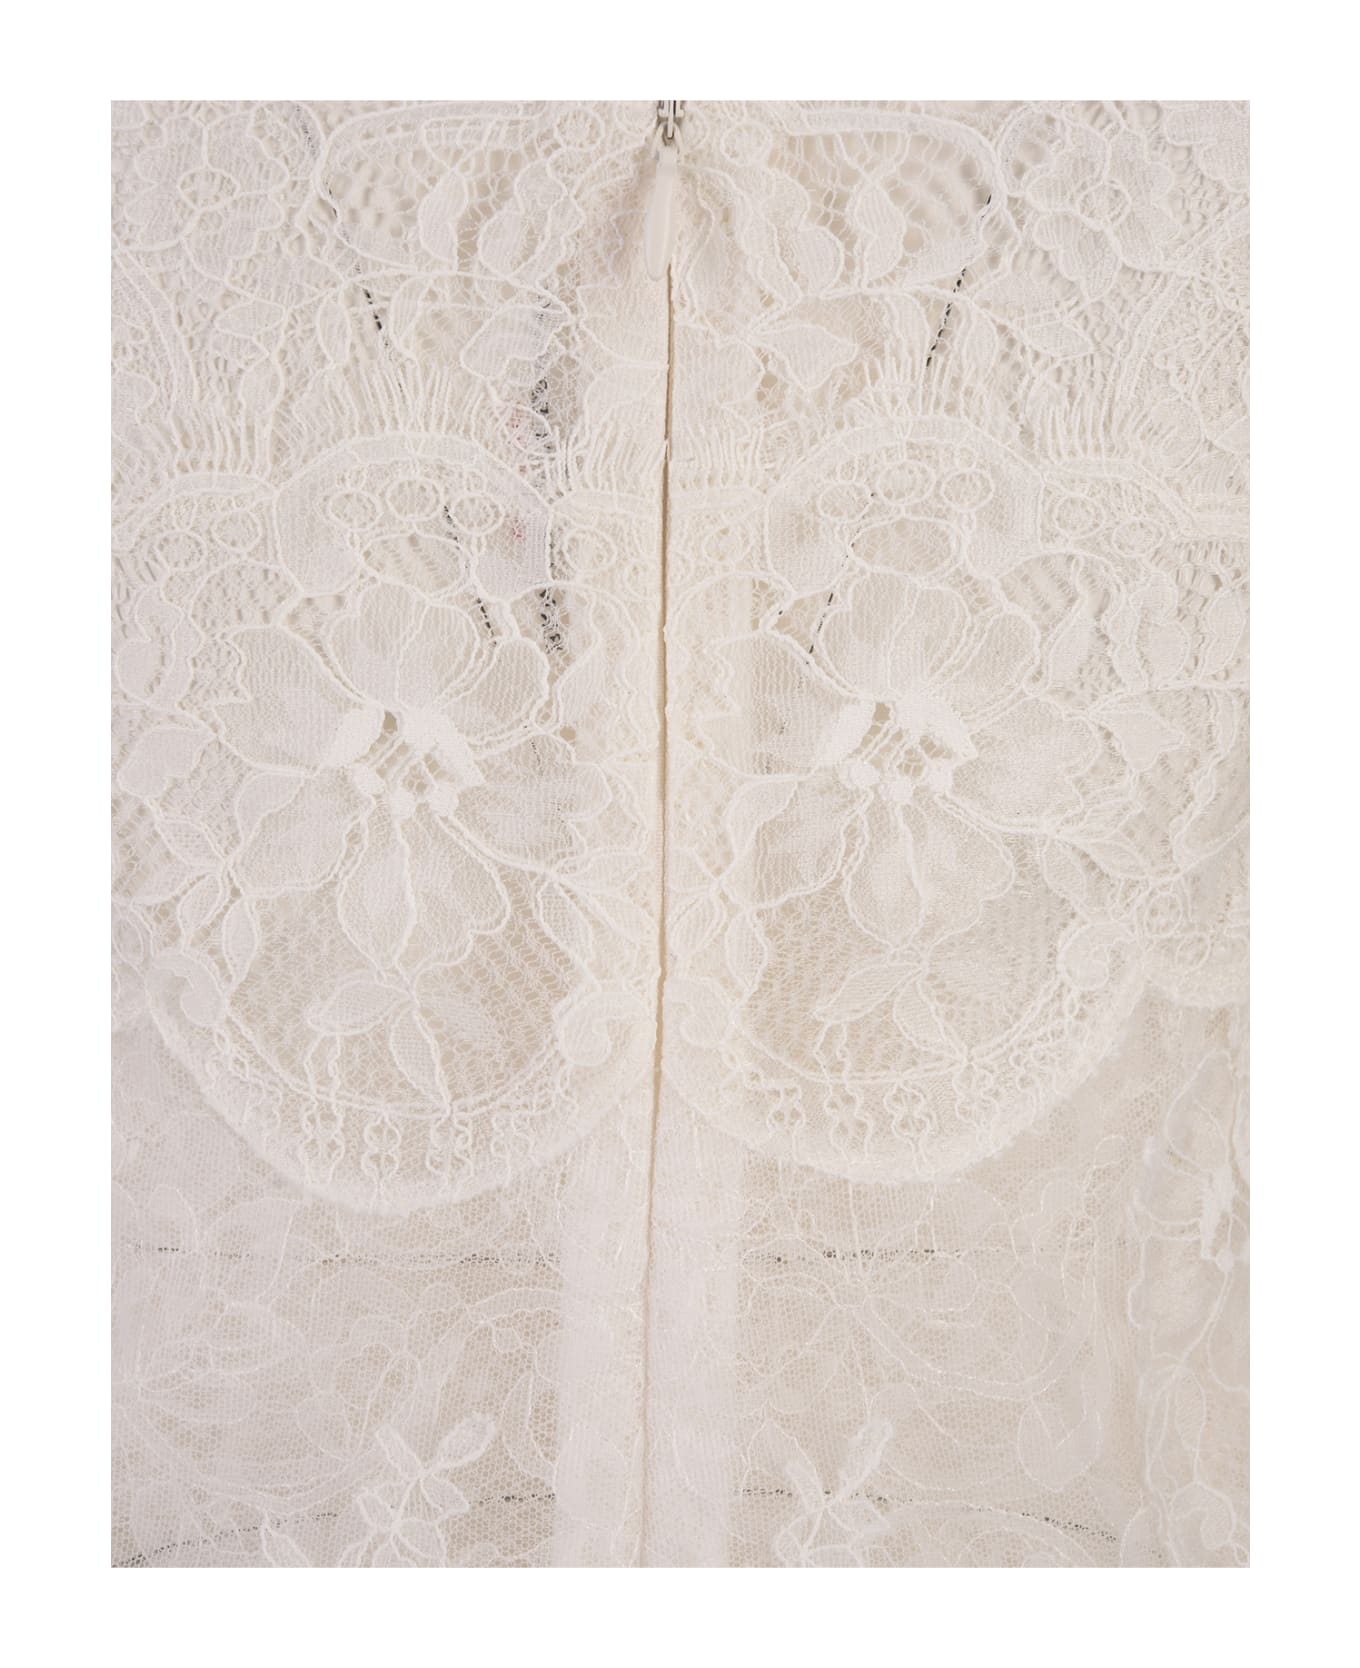 Ermanno Scervino All-over White Lace Lingerie Dress - White